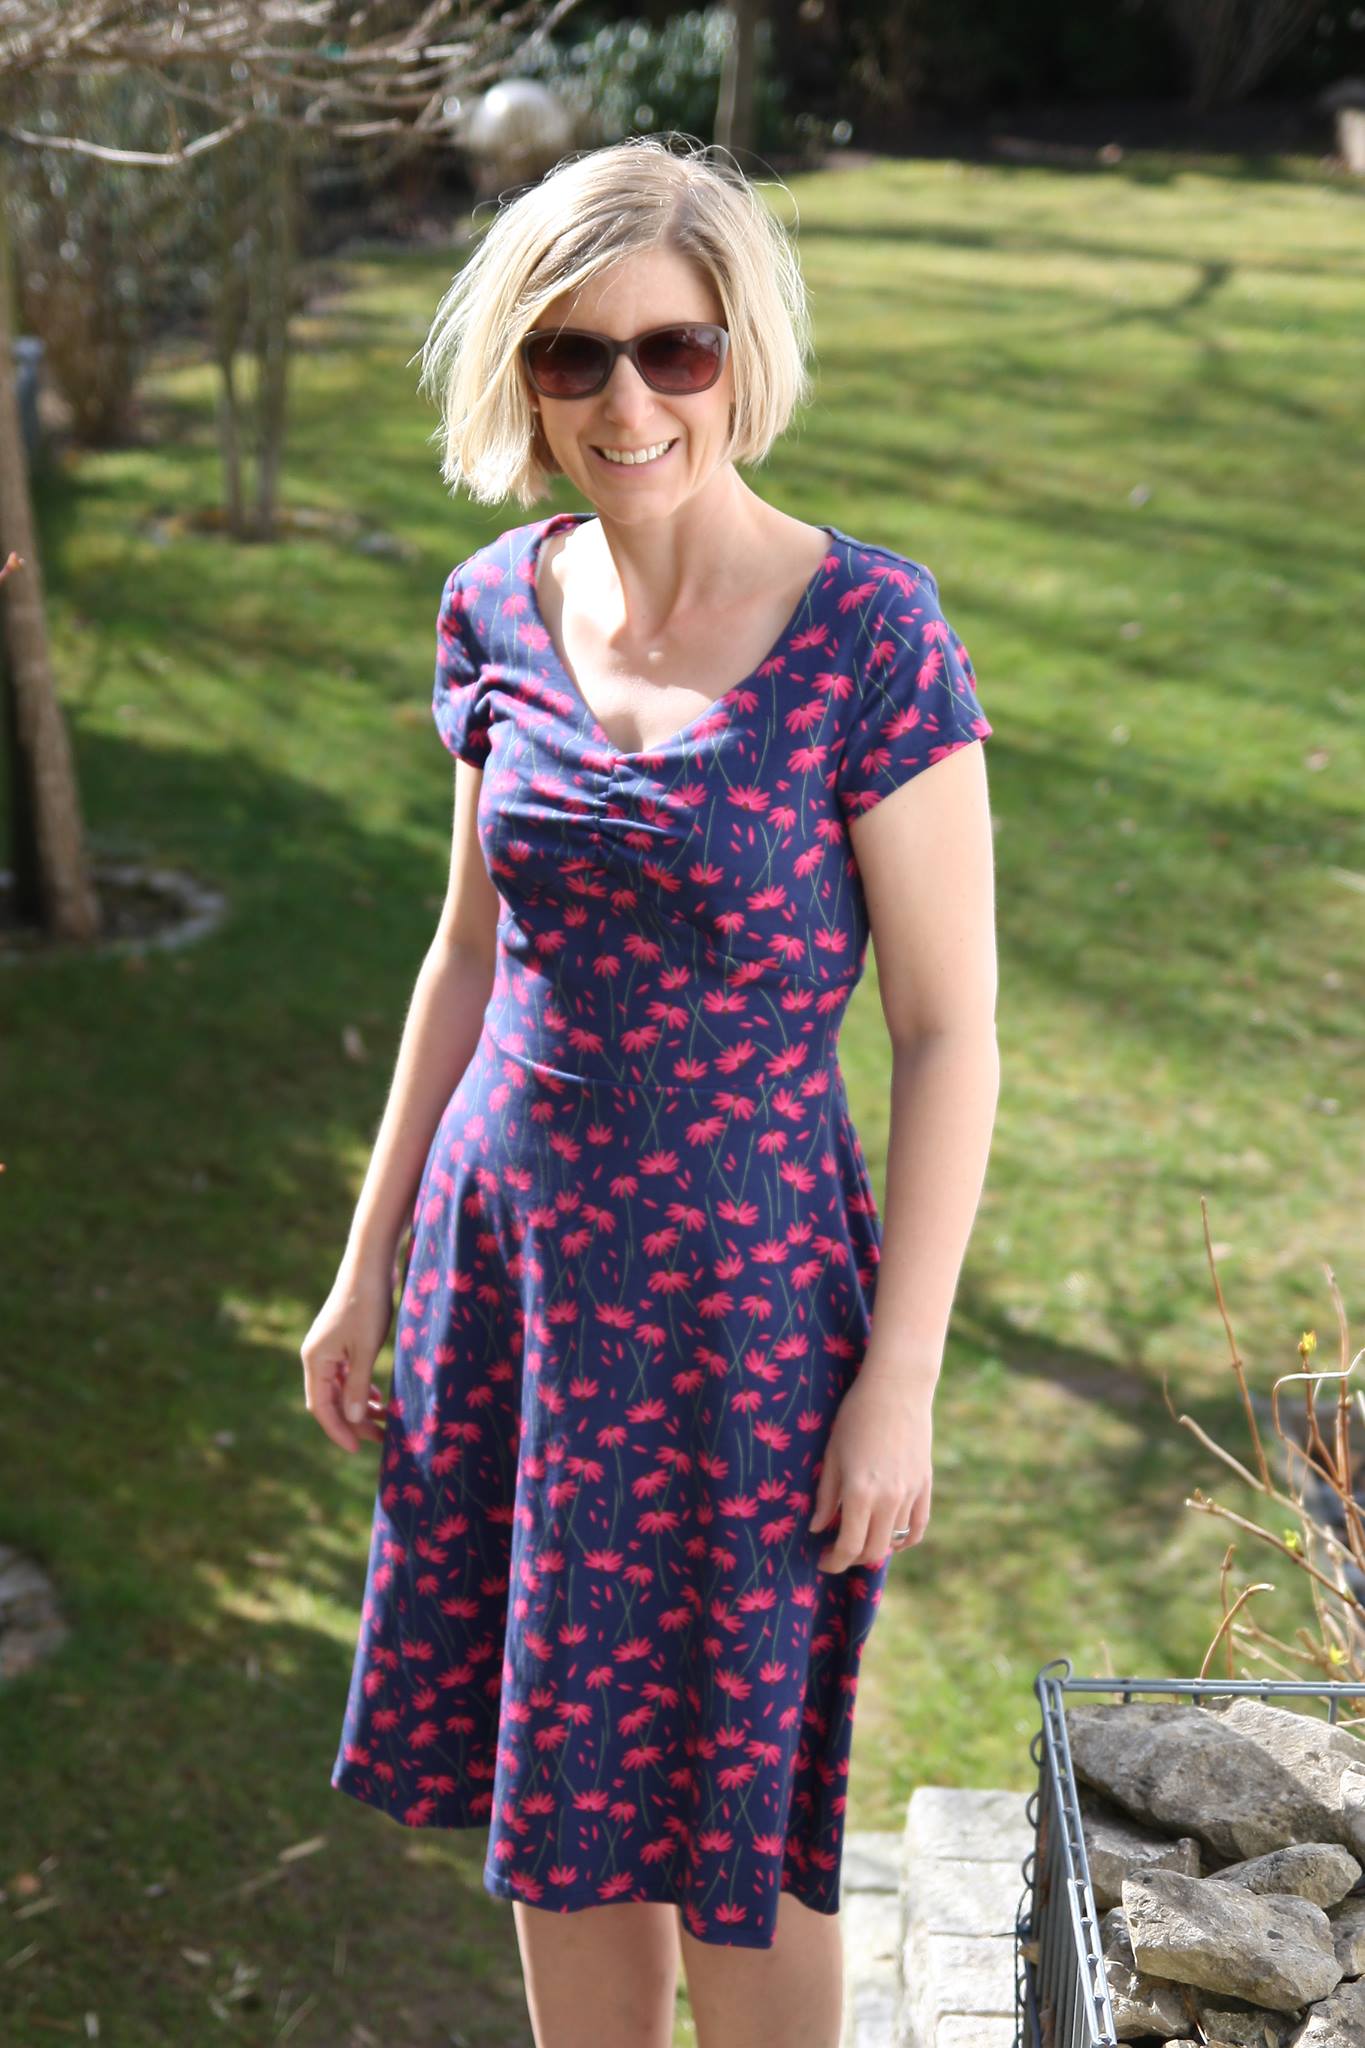 SummerDress- feminines Kleid mit 2 Ausschnittvarianten (Papierschnittmuster) - FinasIdeen